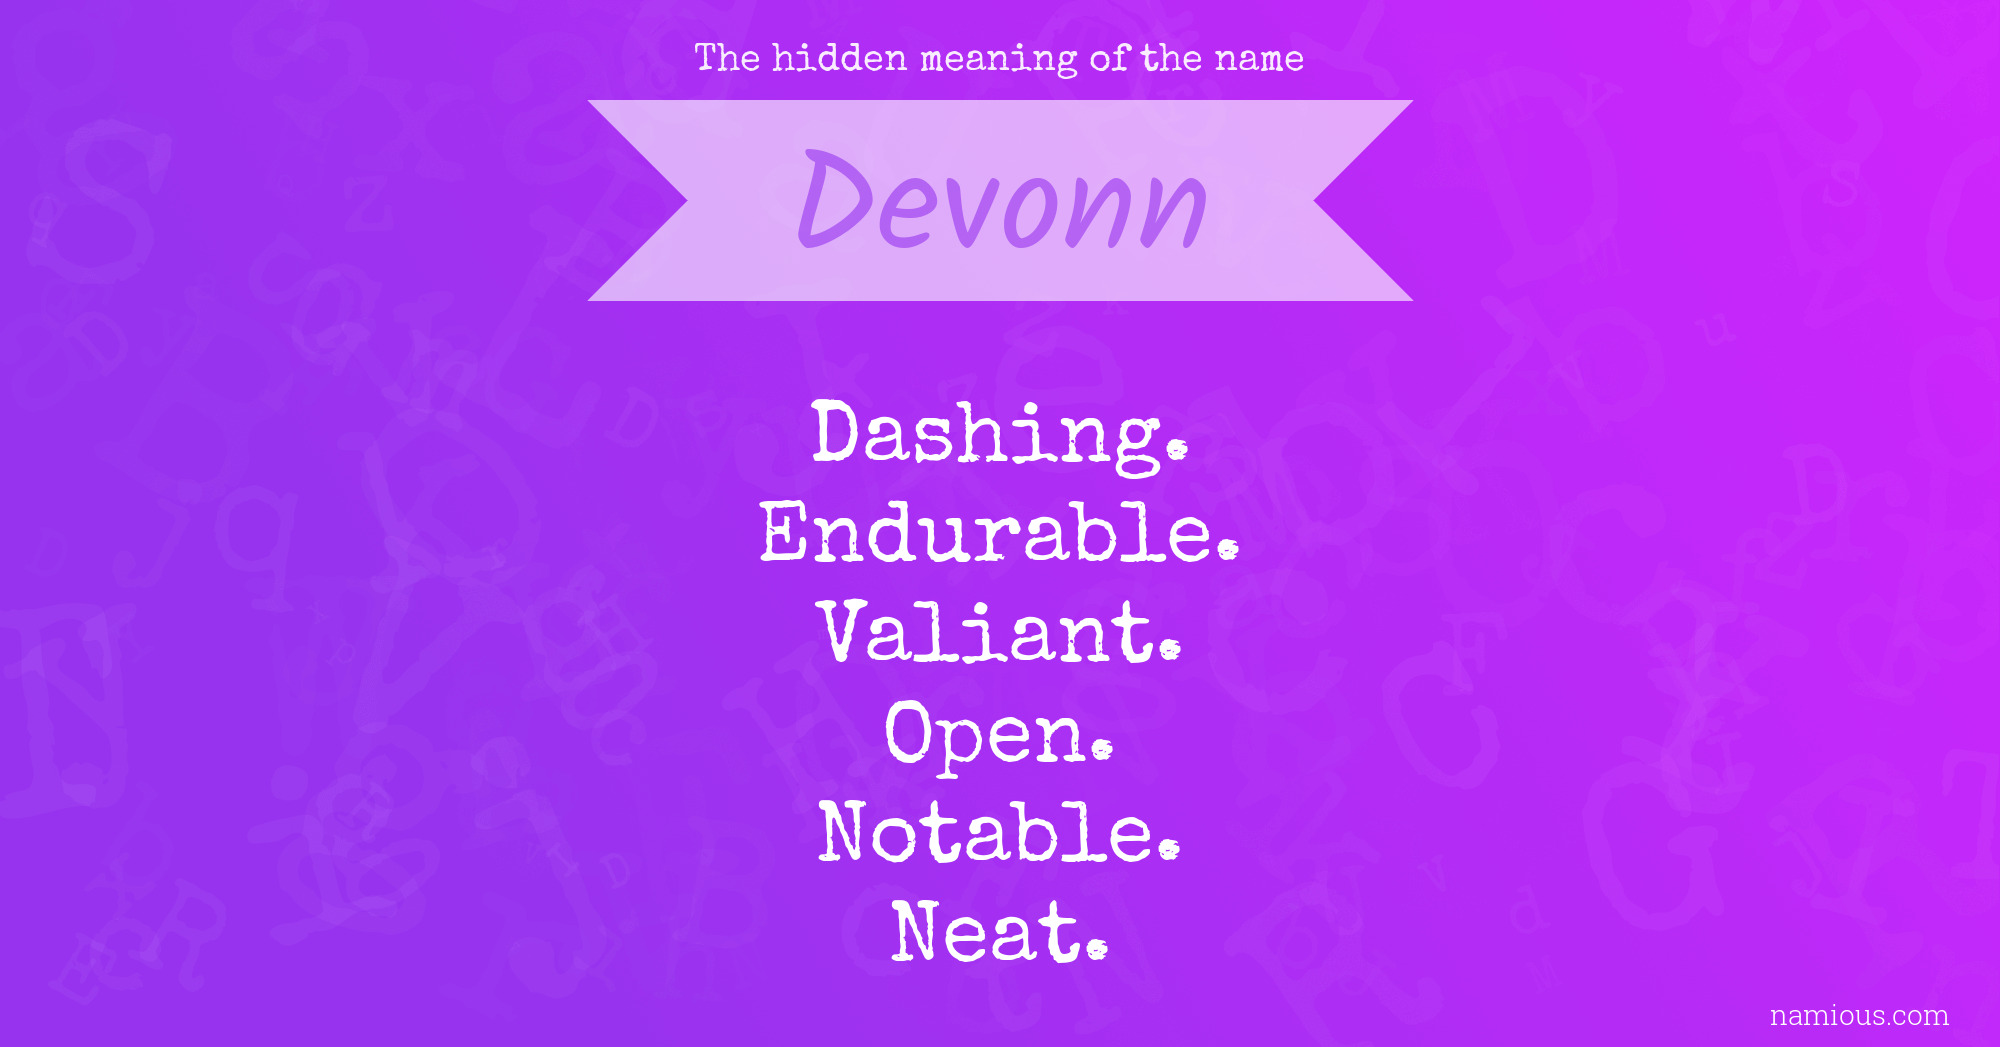 The hidden meaning of the name Devonn